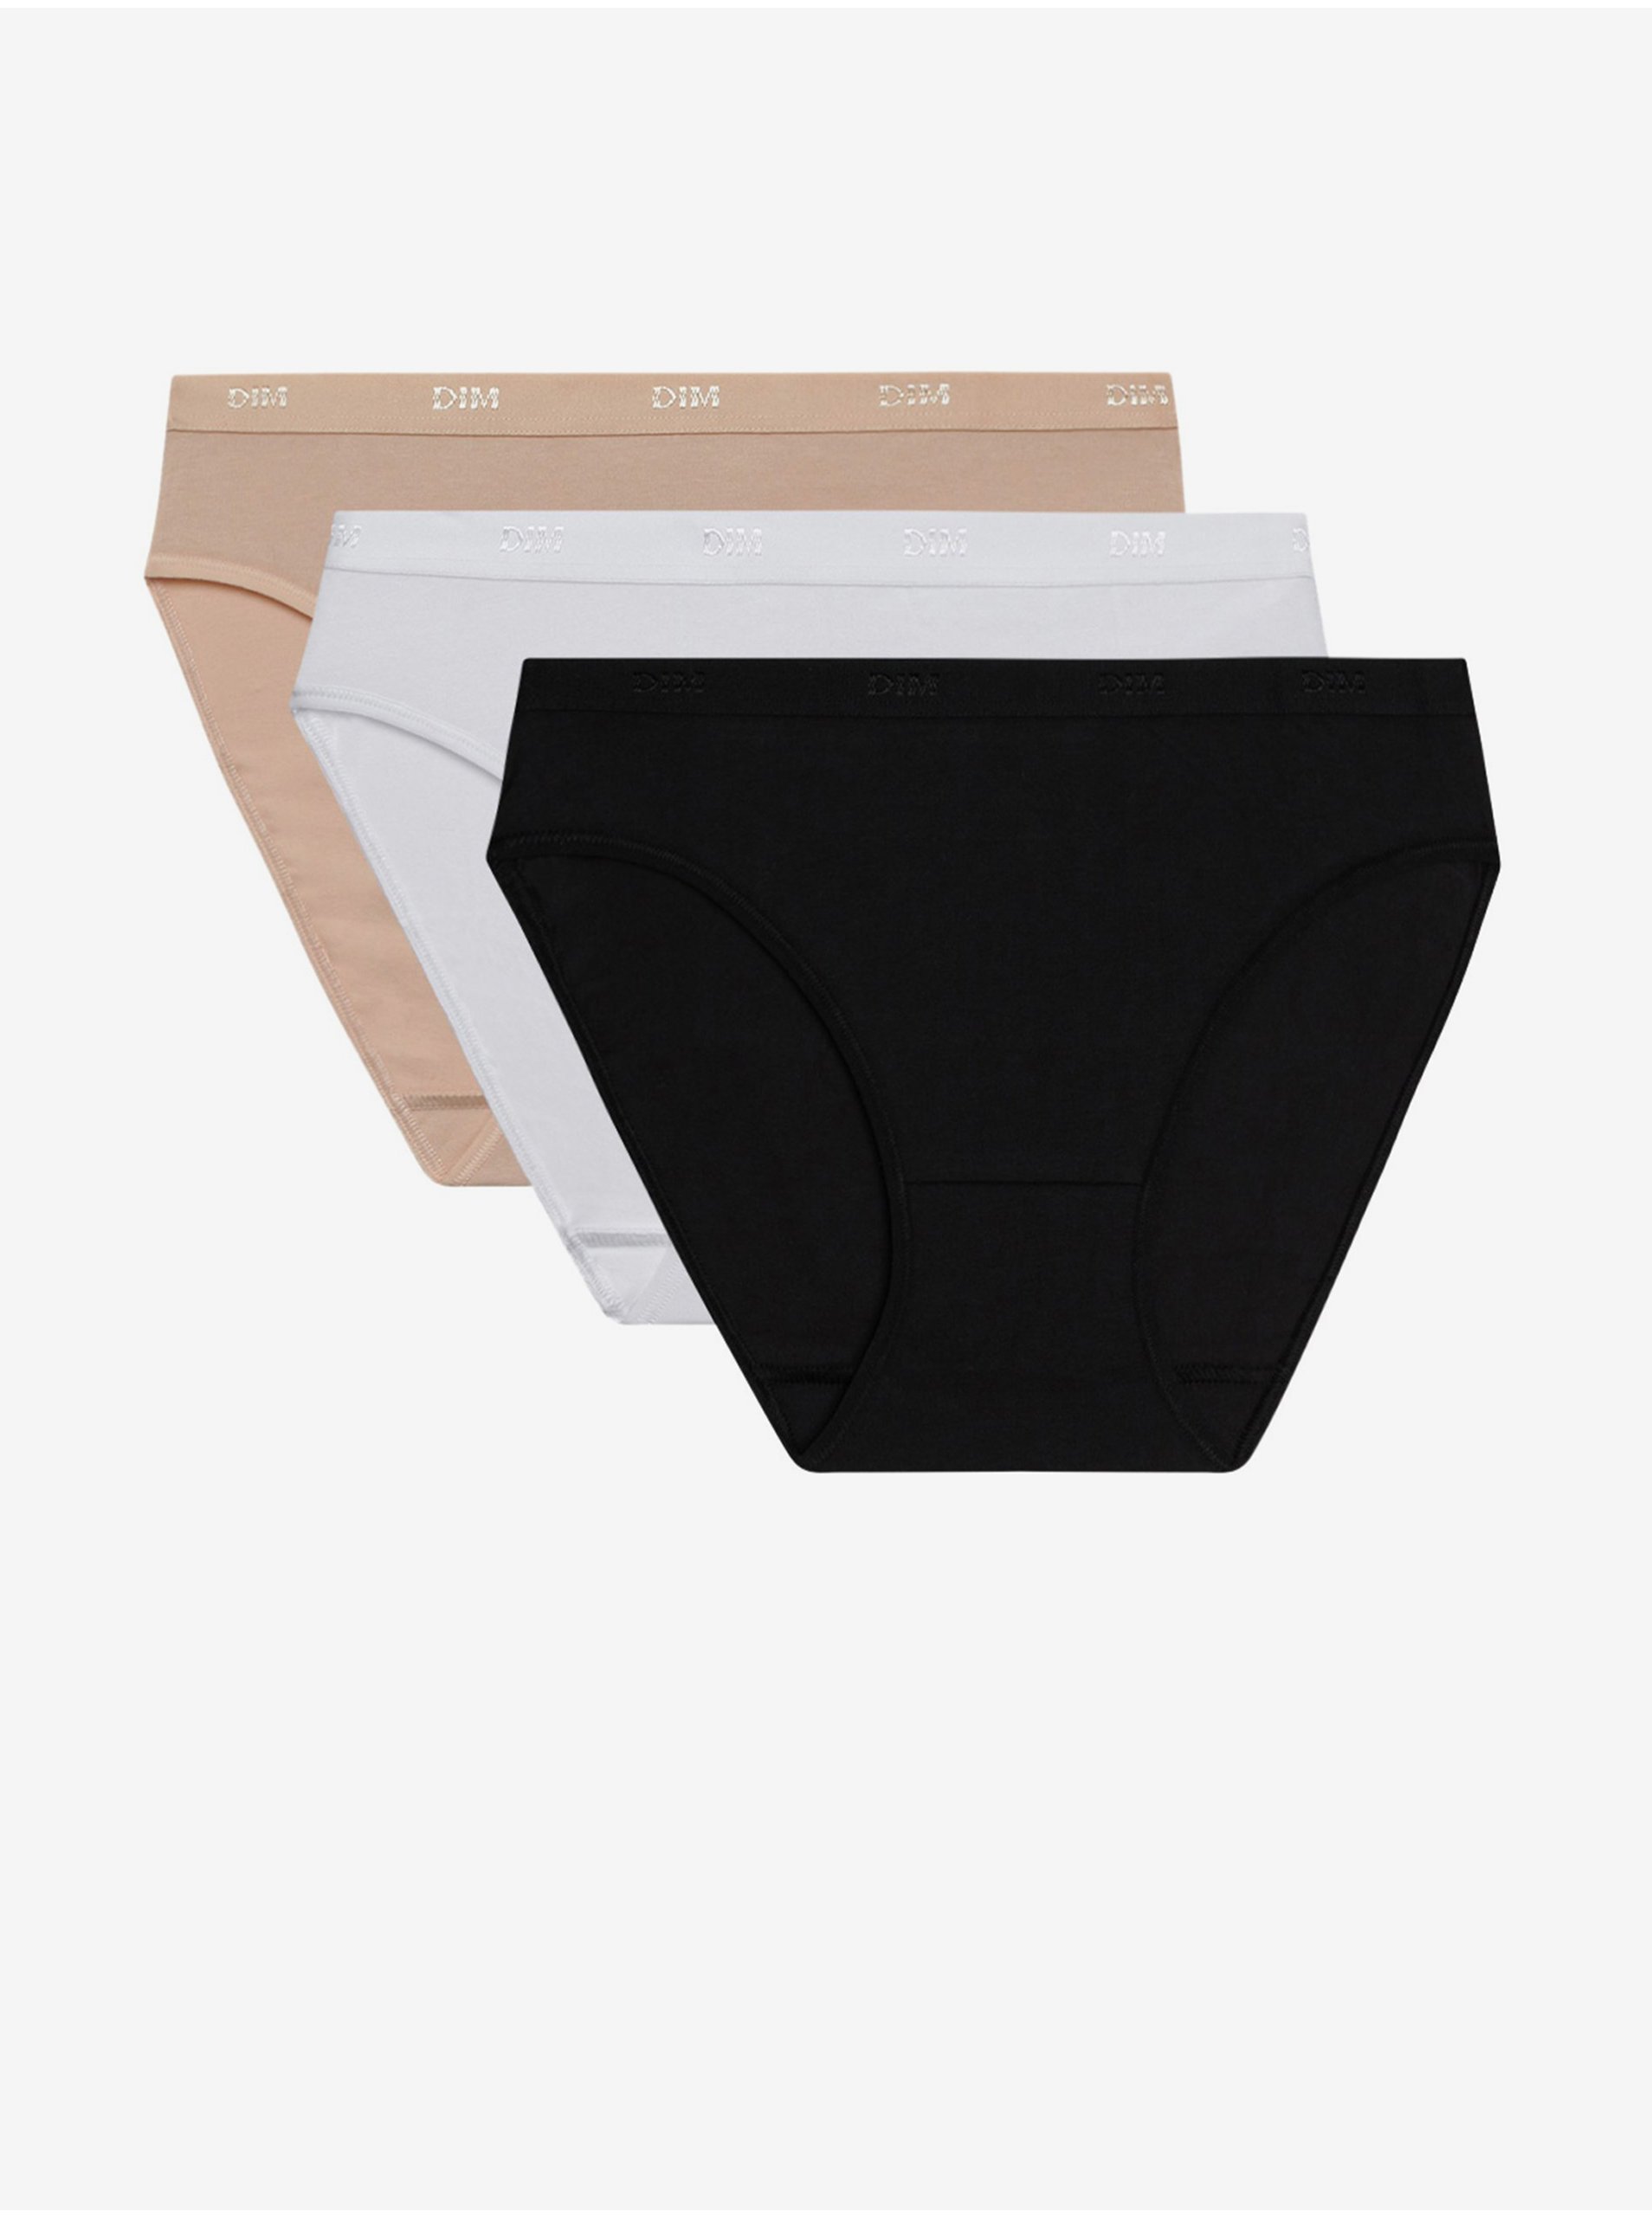 E-shop Sada tří dámských kalhotek v bílé, černé a tělové barvě Dim ECO LES POCKETS SLIP